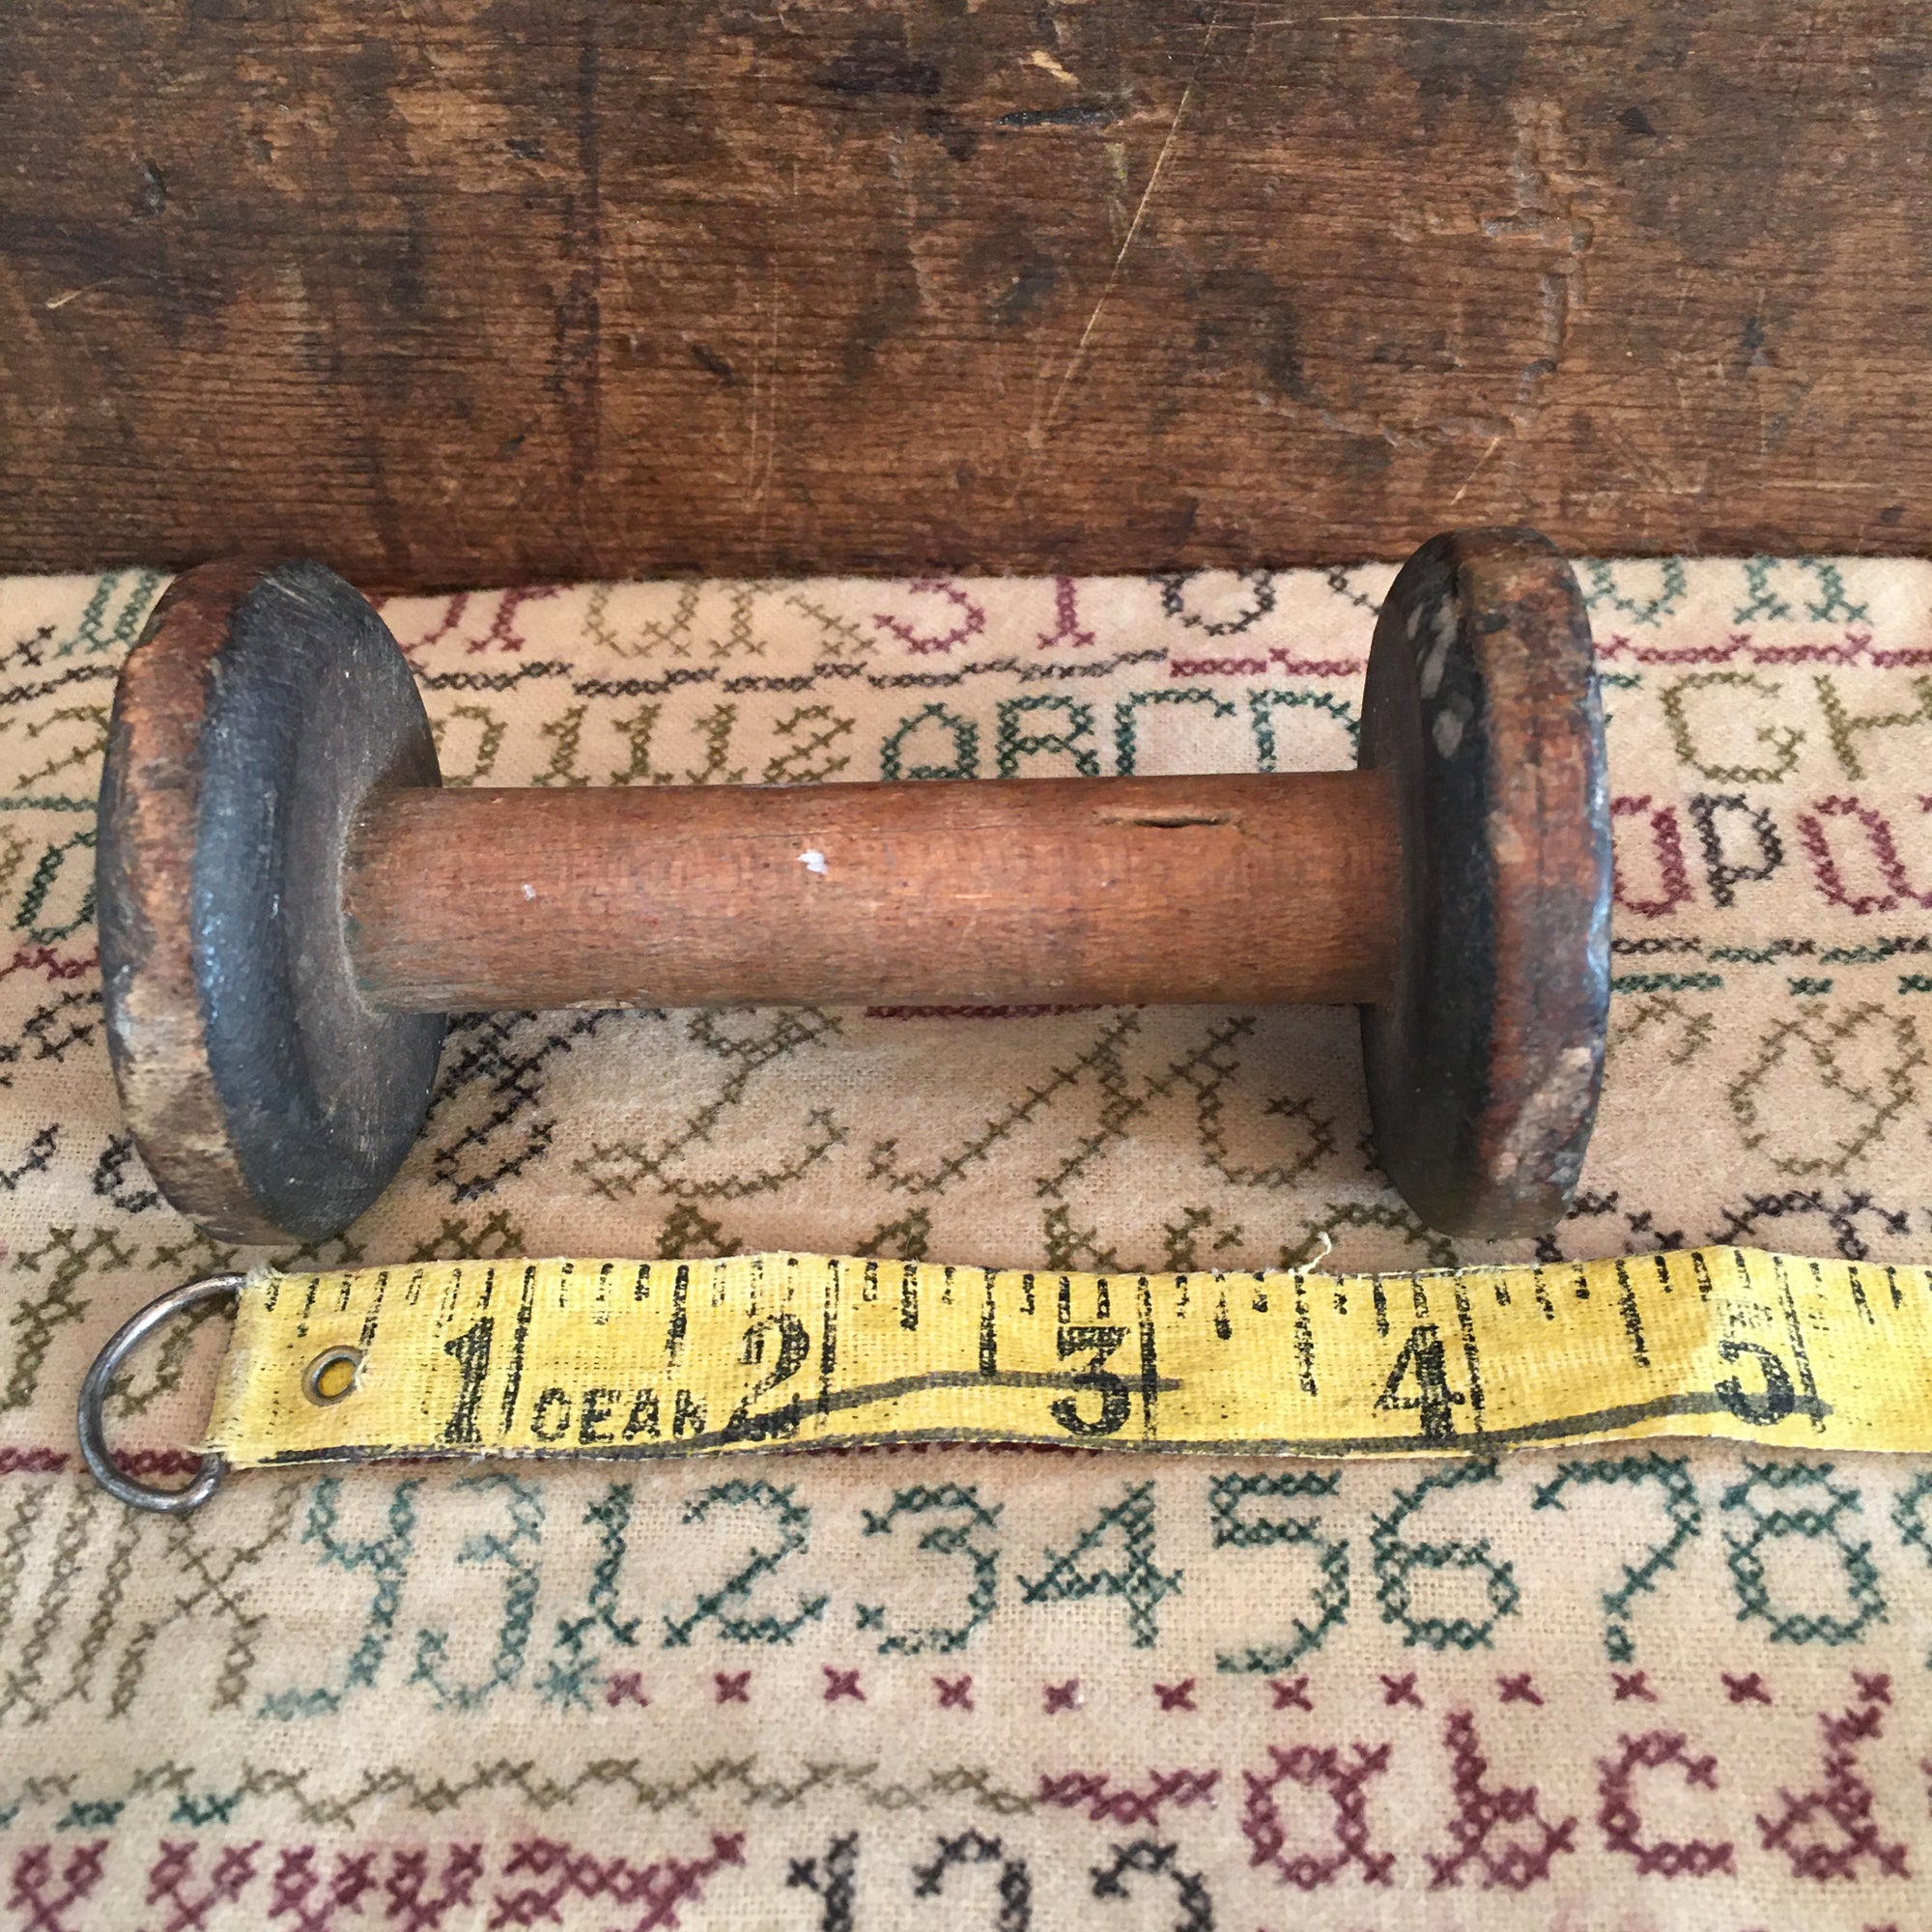 Wooden Spool 4” Long